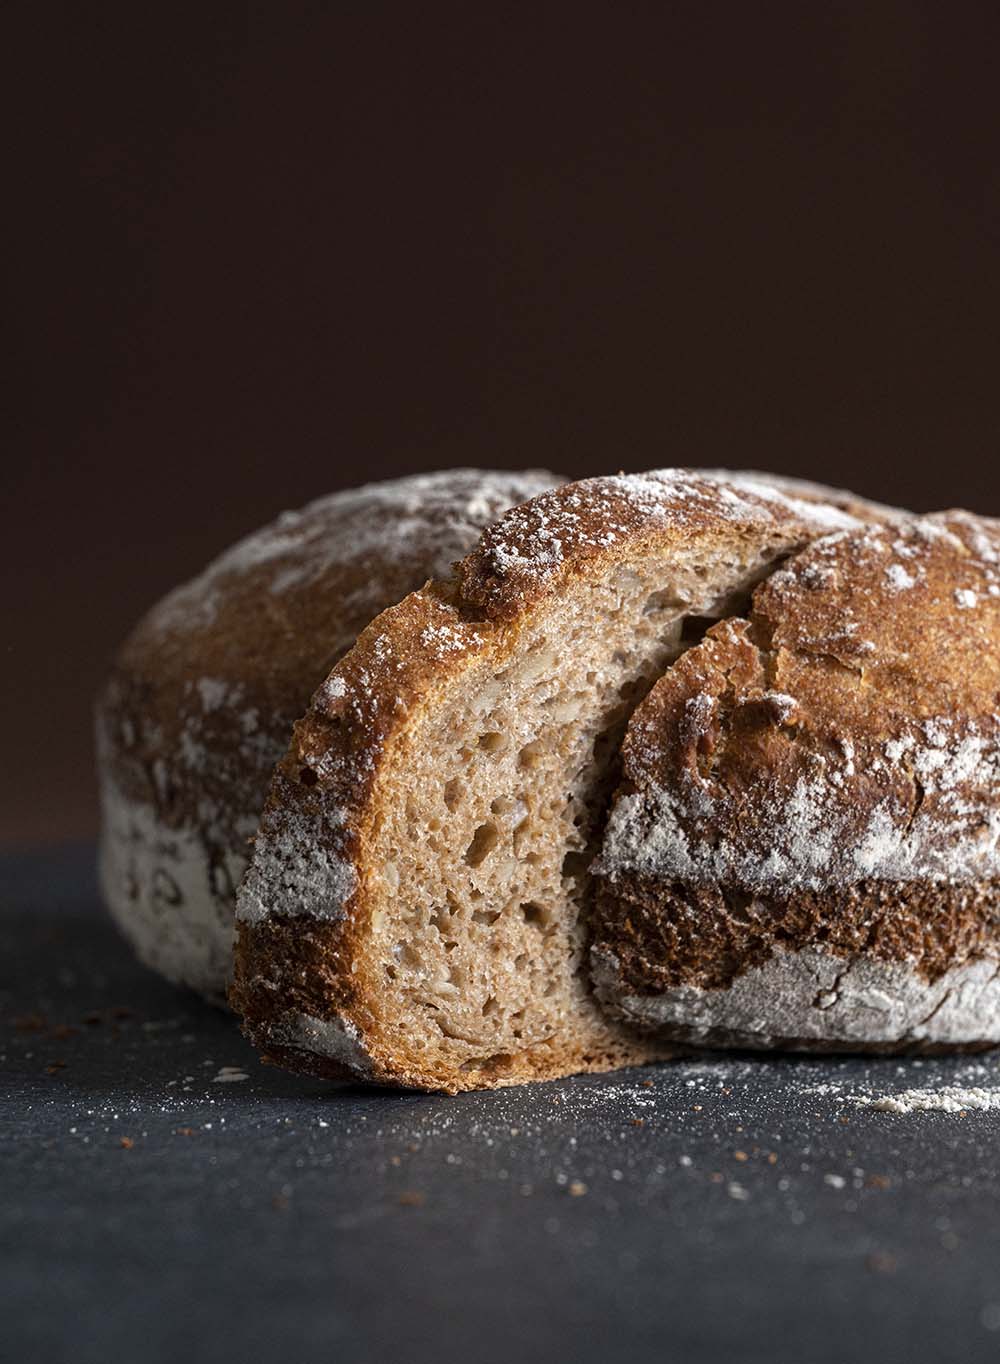 Unser frisch gebackenes Brot im Anschnitt. Diesmal von der Seite fotografiert, so dass man die schöne Produng der Scheibe sieht.